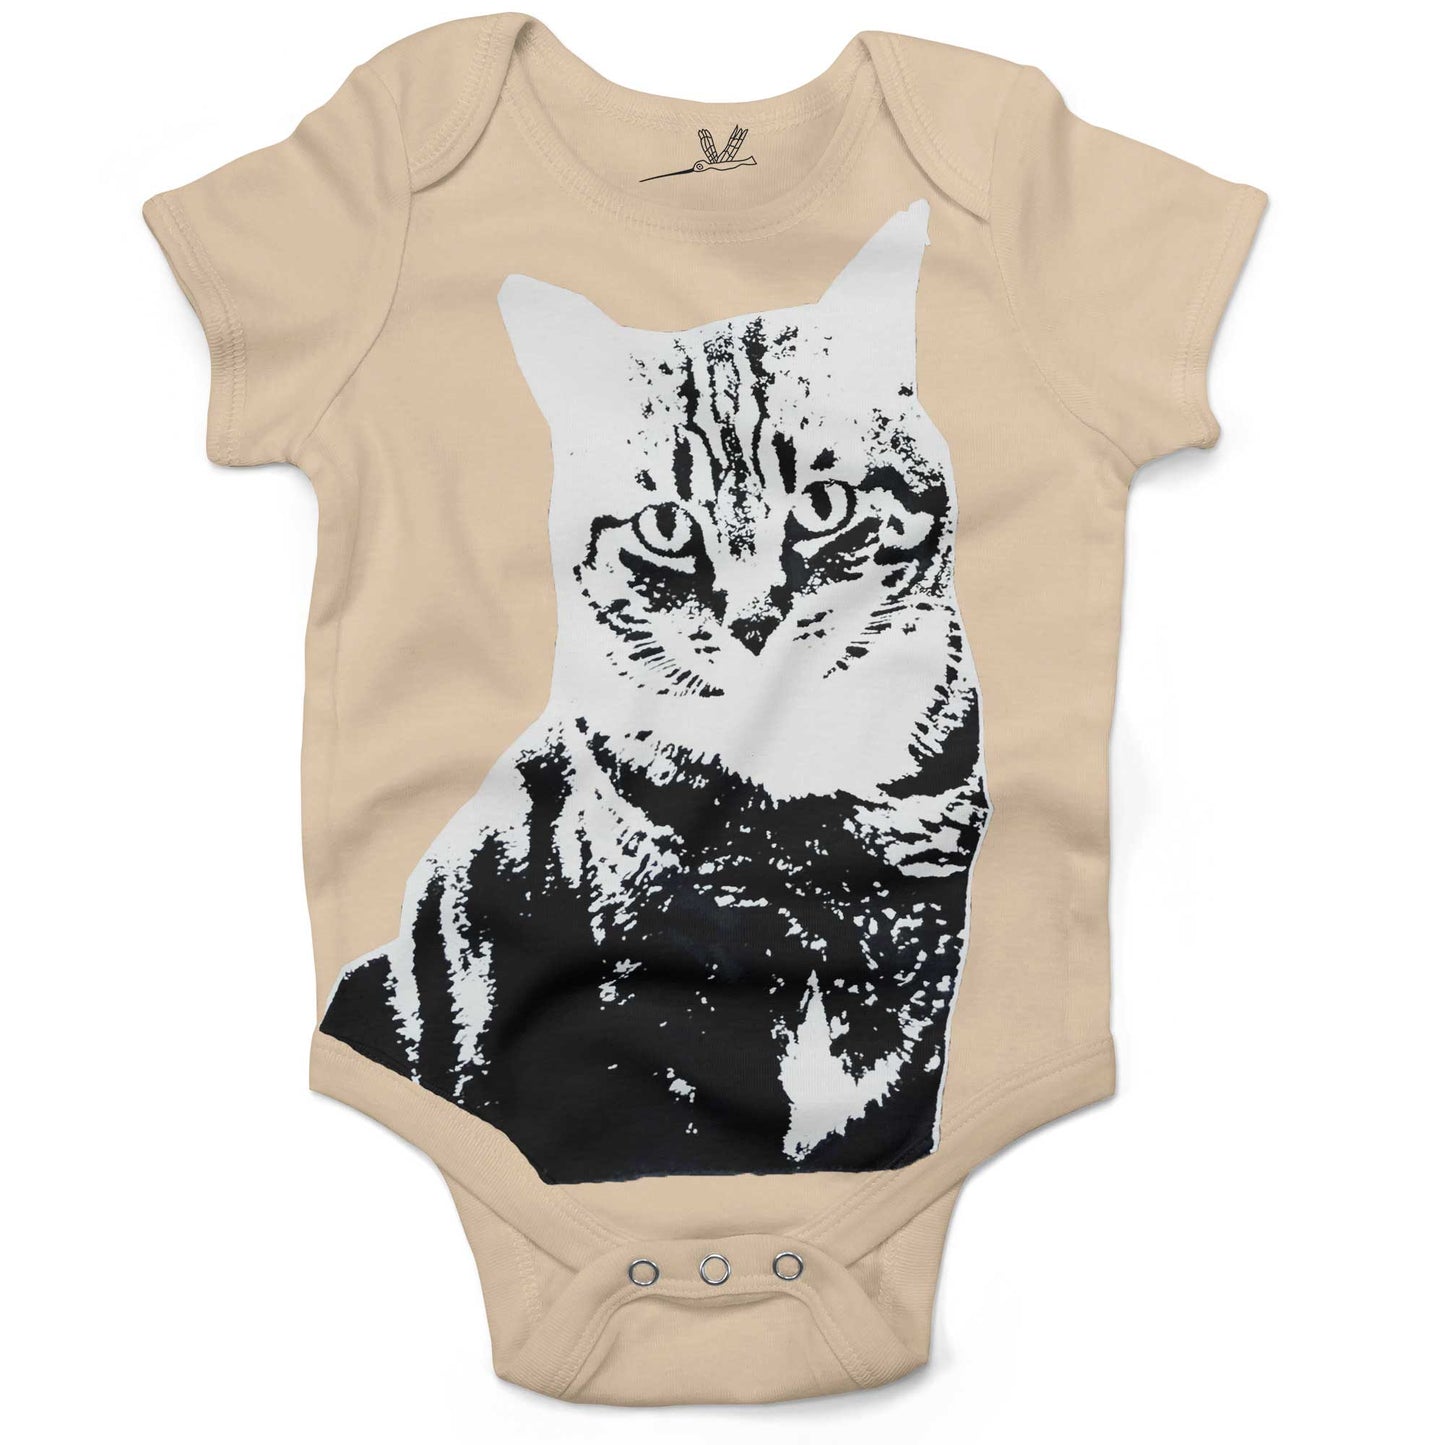 Black & White Cat Infant Bodysuit or Raglan Baby Tee-Organic Natural-3-6 months